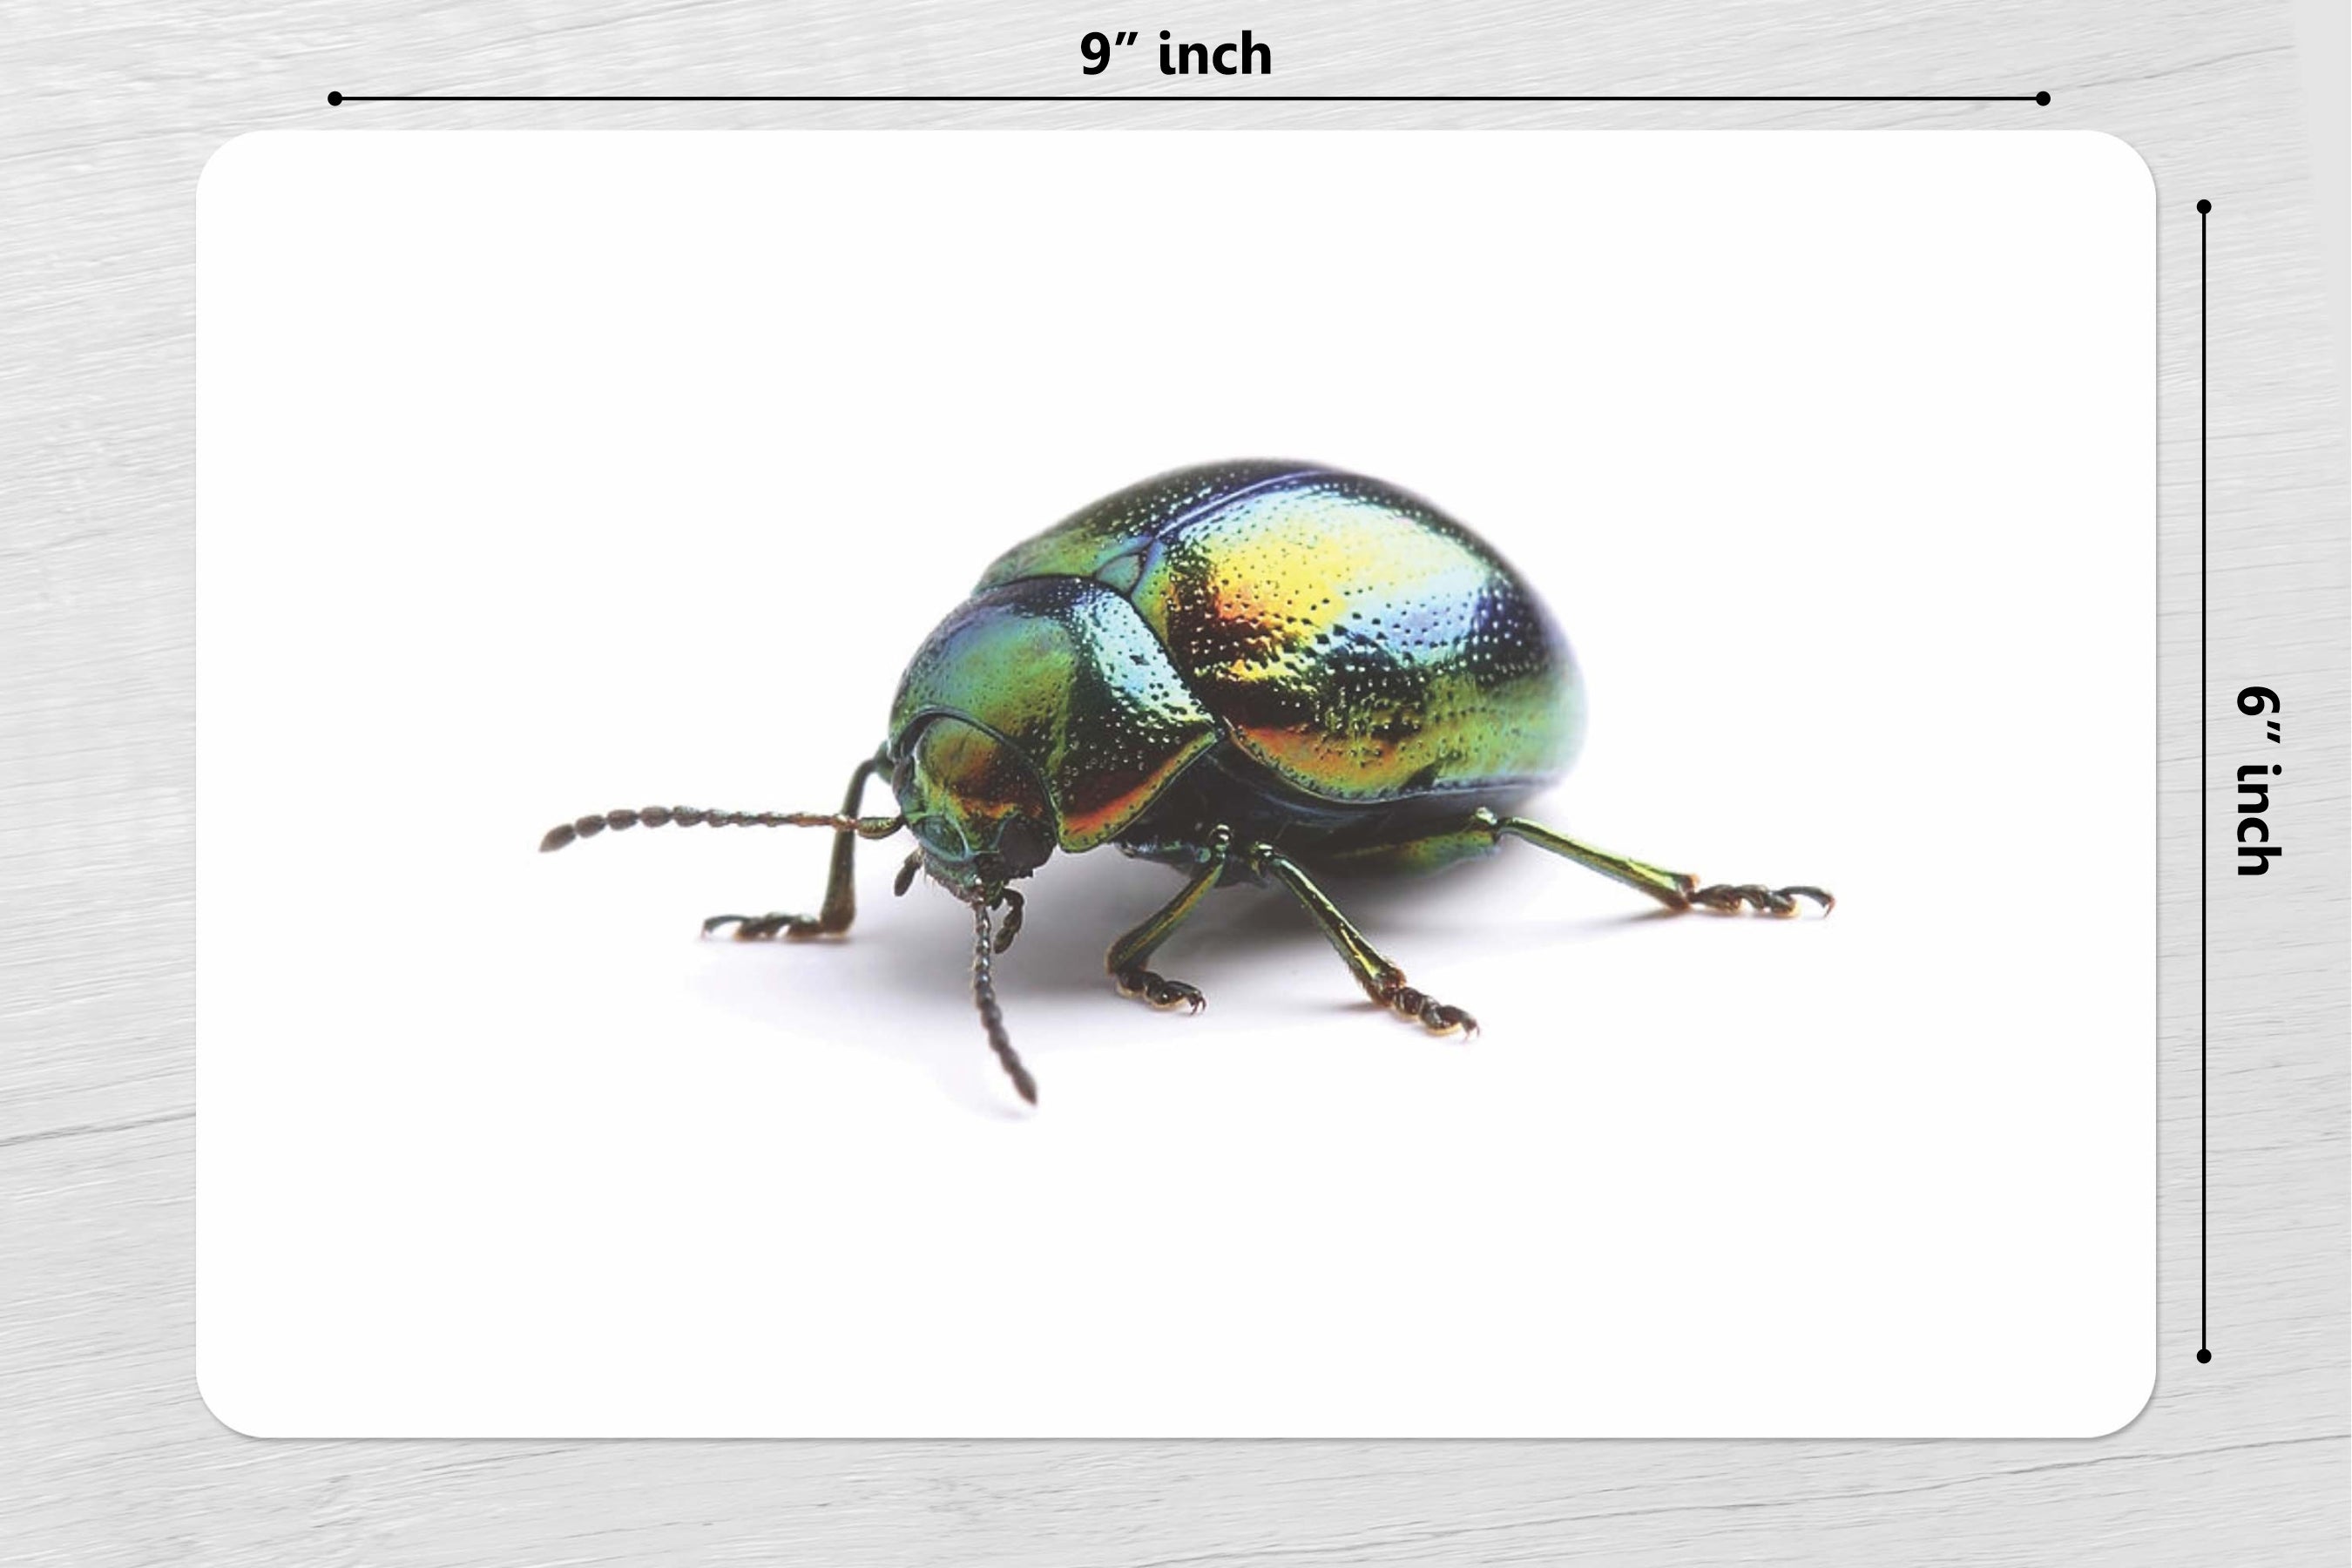 Types of Beetles